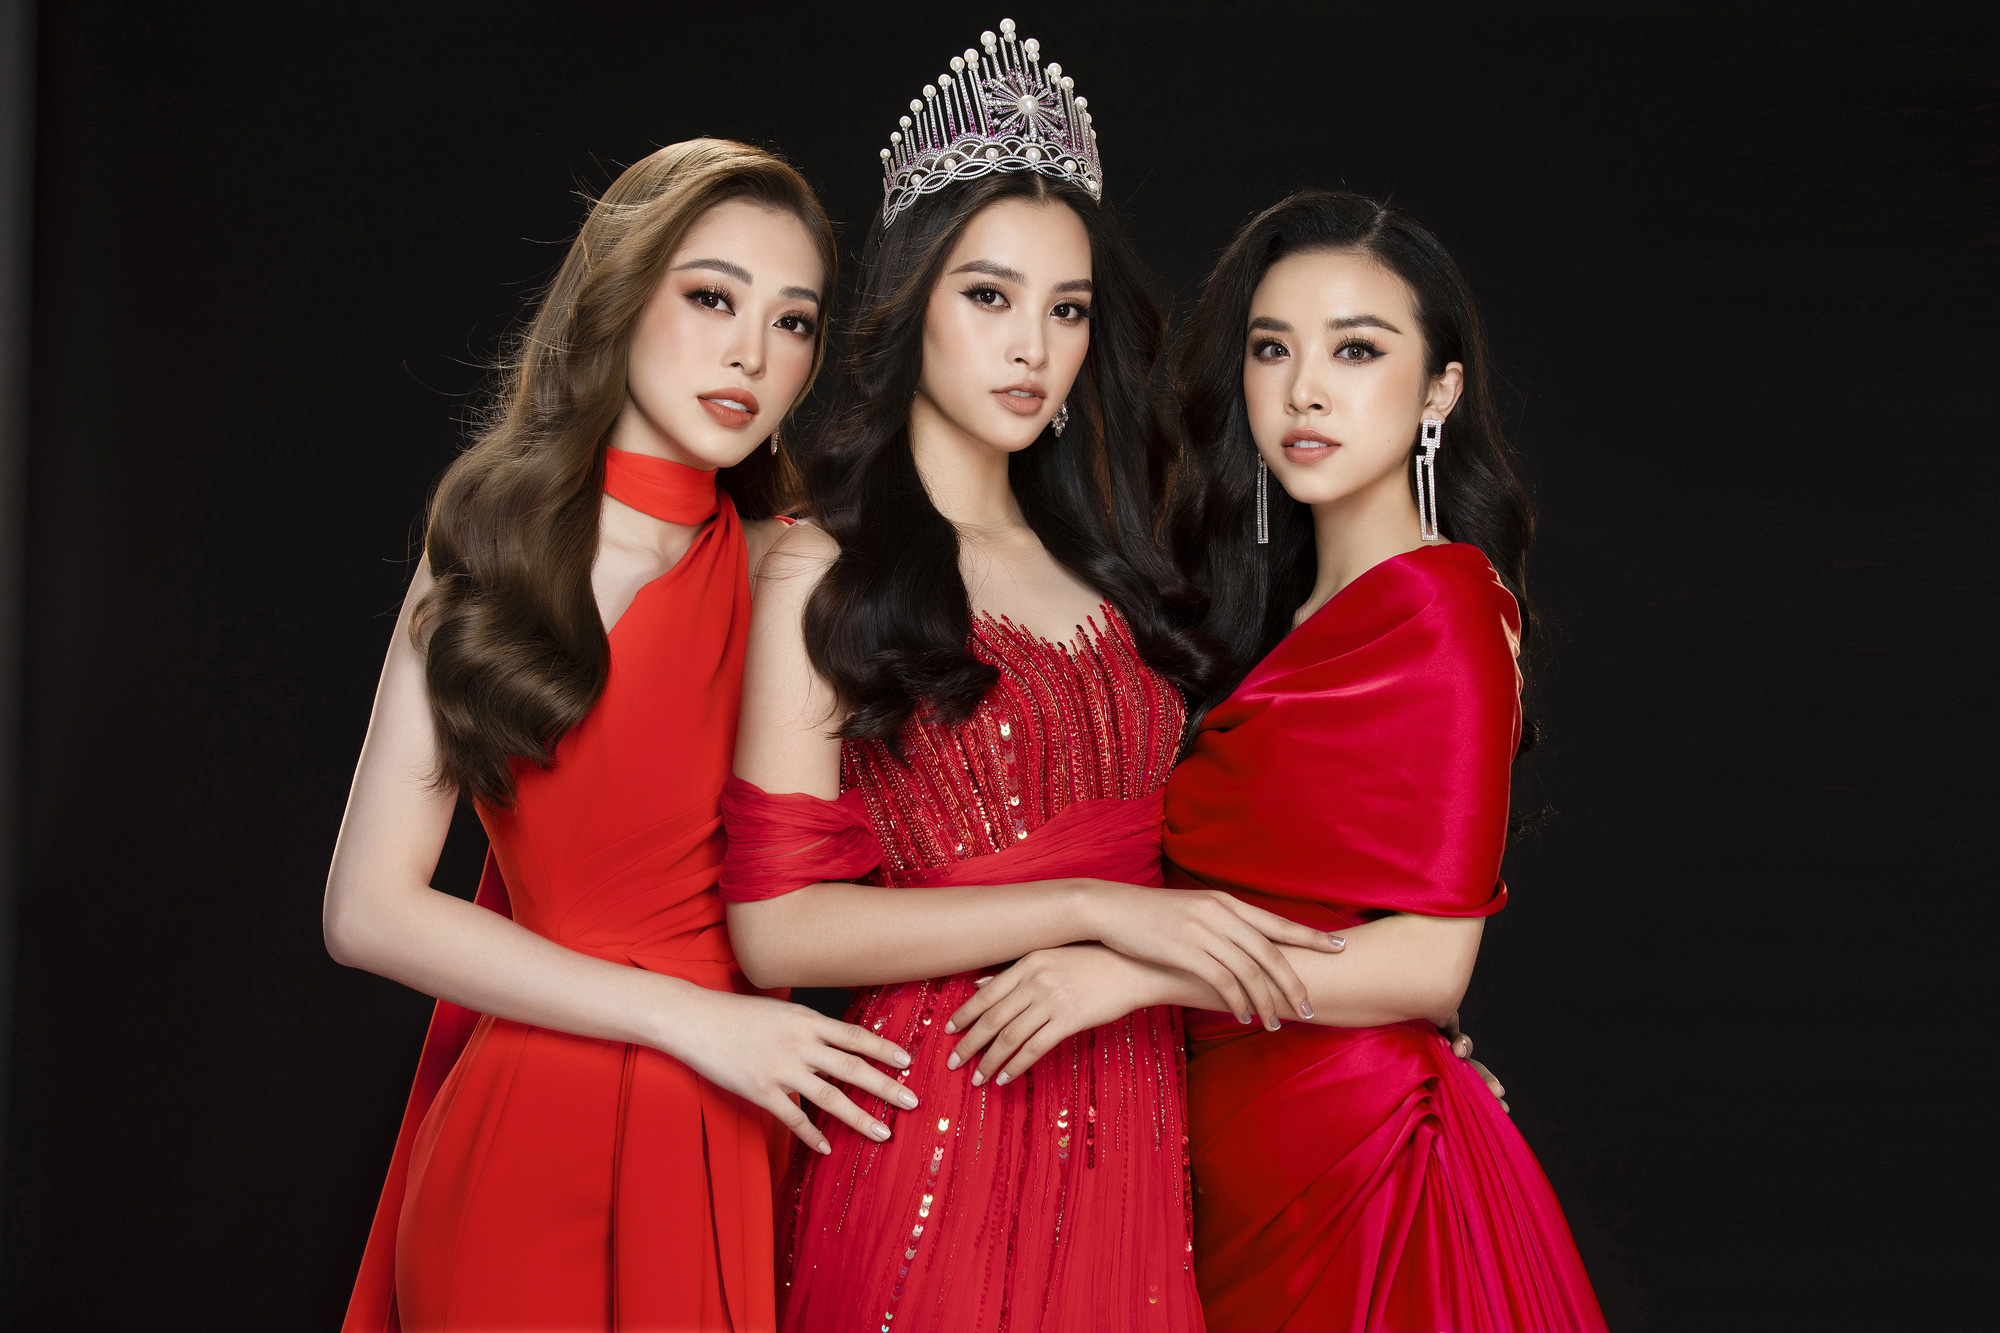 Hoa hậu Việt Nam 2020 chính thức khởi động, đi tìm chủ nhận mới của chiếc vương miện kế nhiệm Trần Tiểu Vy - Ảnh 4.